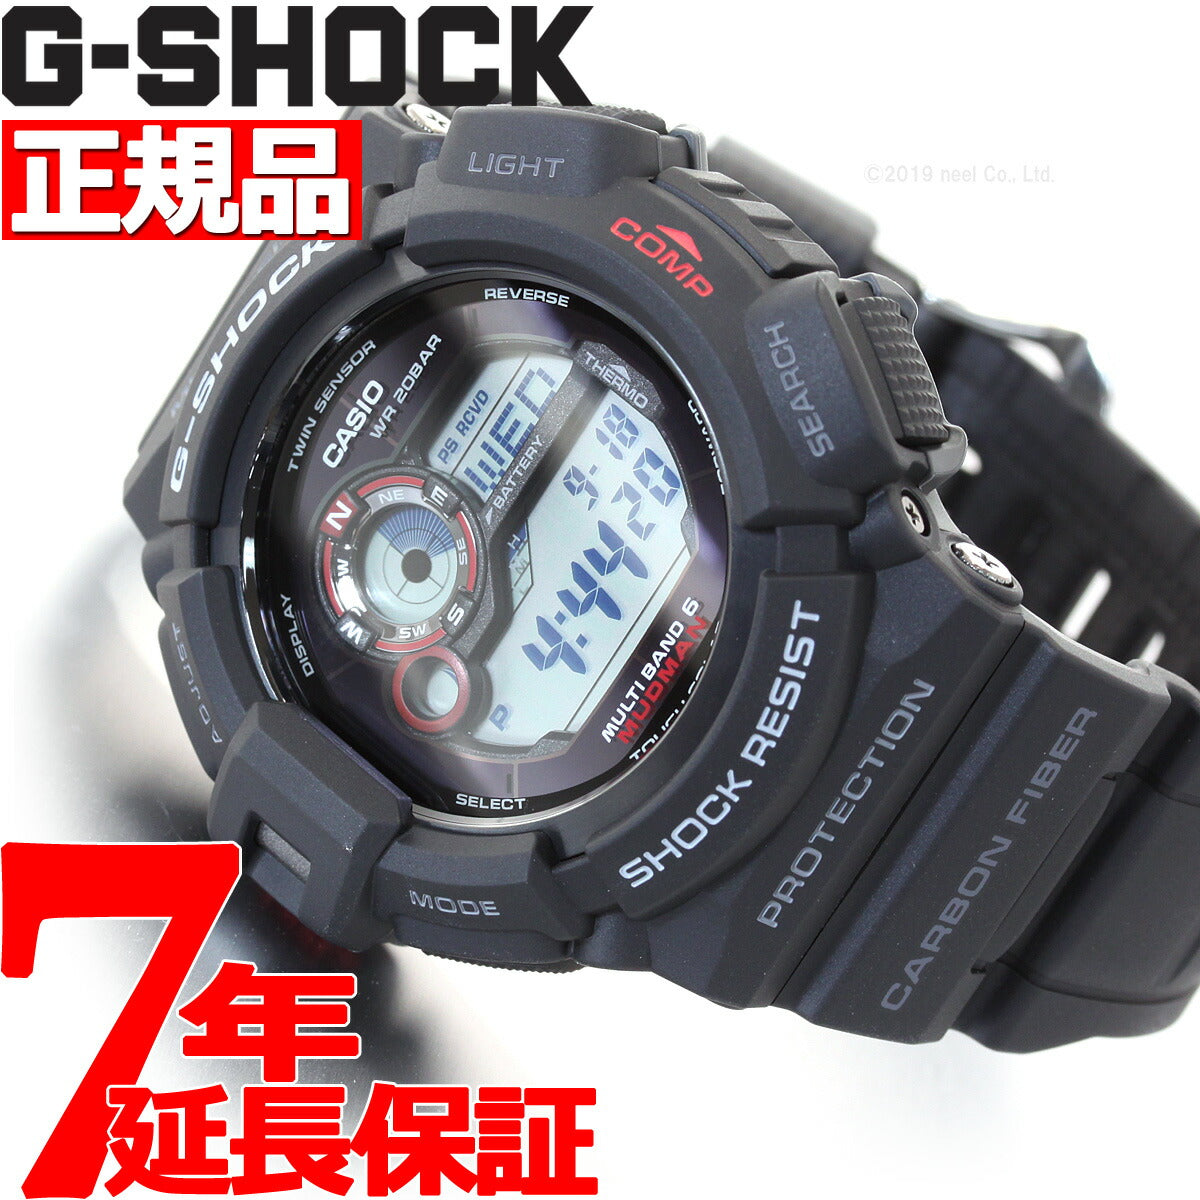 カシオ Gショック G-SHOCK マッドマン MUDMAN 電波 ソーラー 腕時計 メンズ マスターオブG GW-9300-1JF【カシオ Gショック マスターオブG】【正規品】【送料無料】